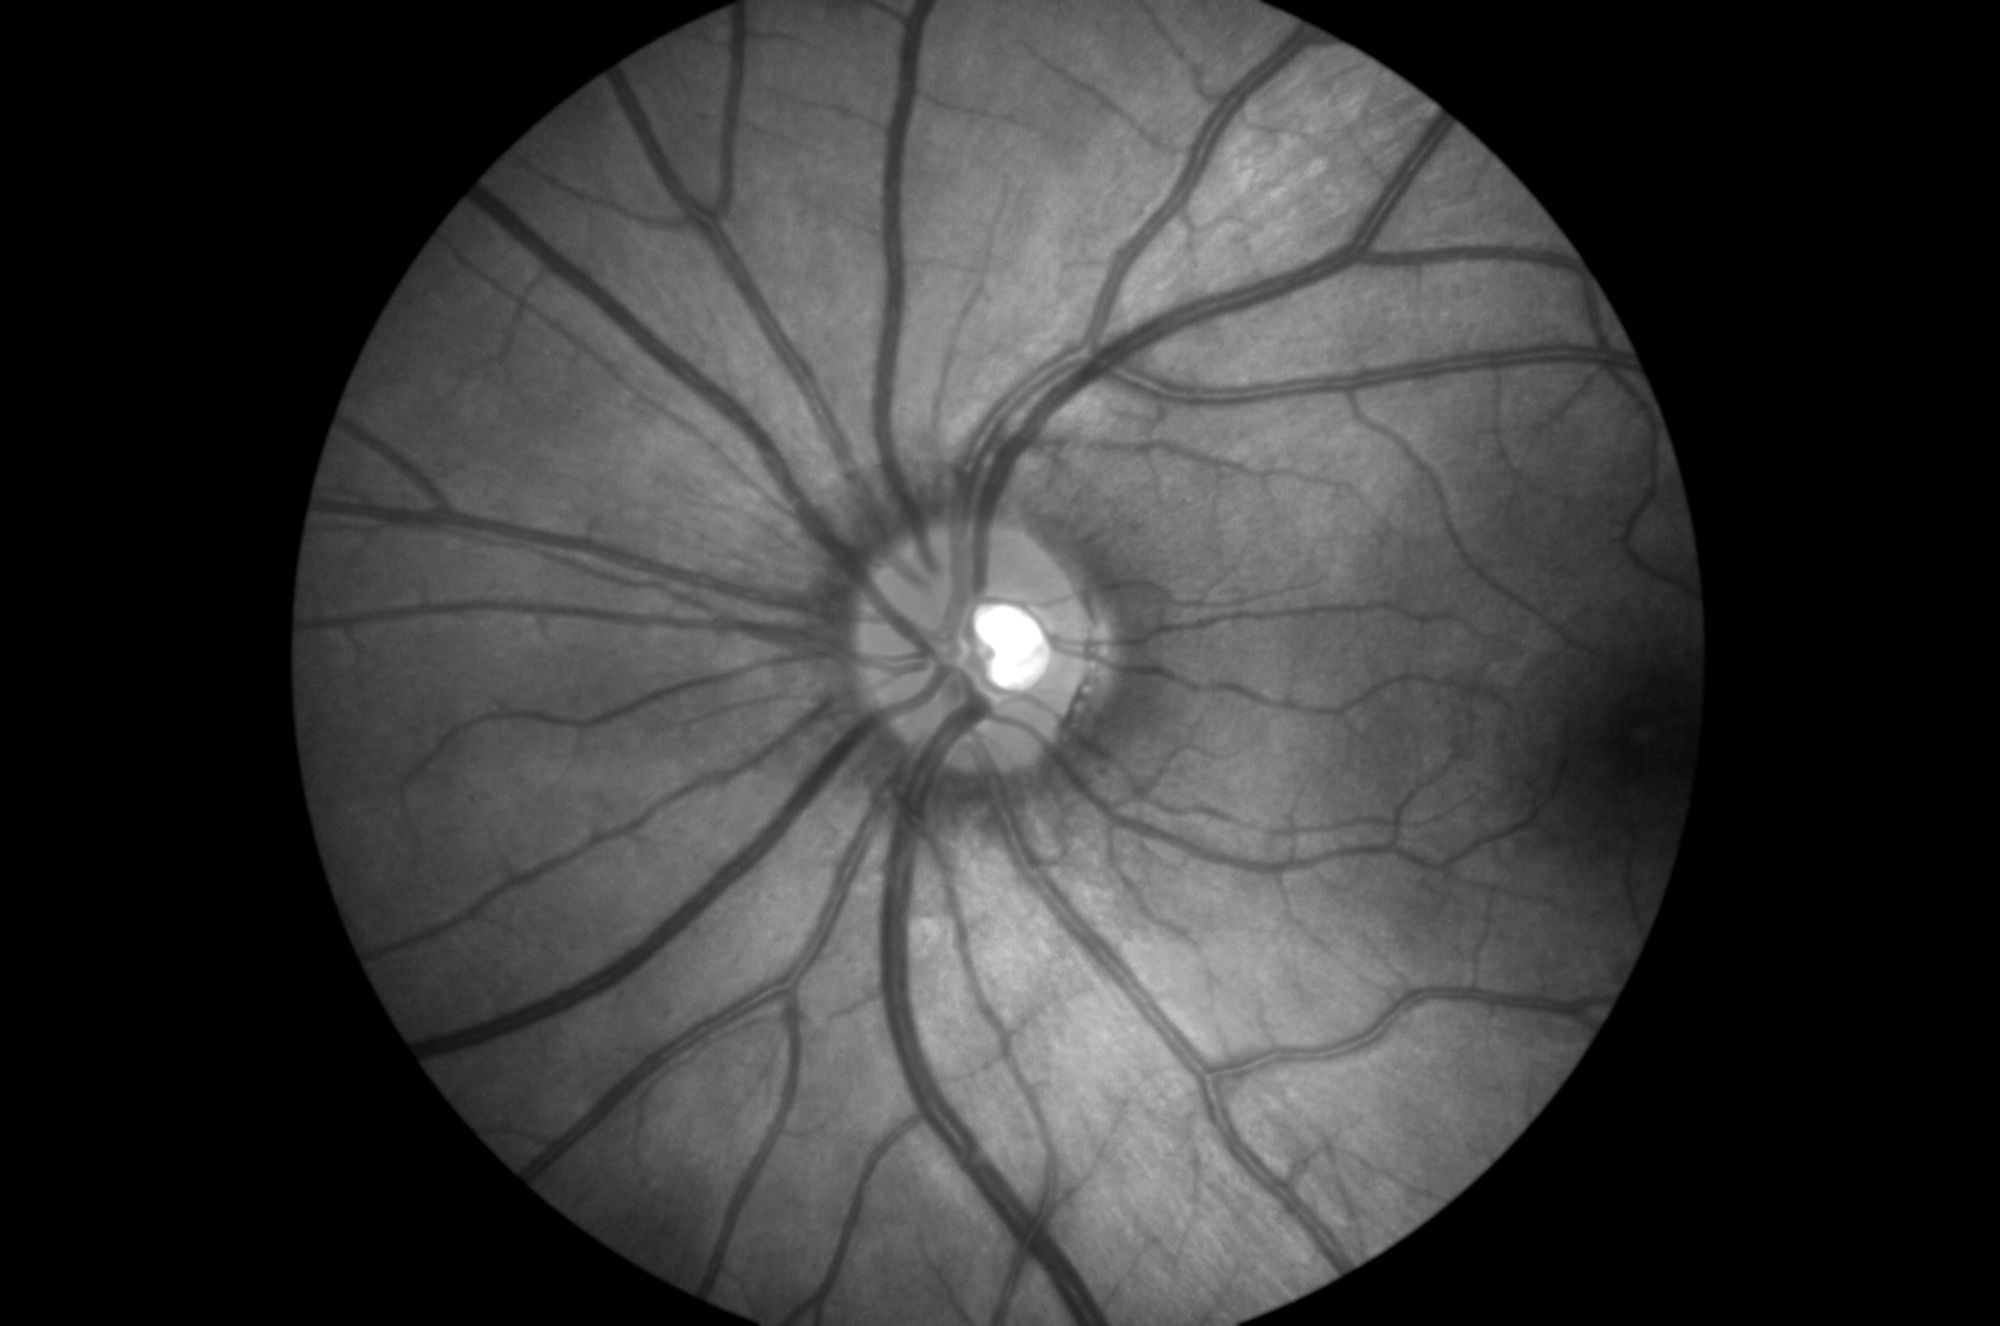 imaging retinal pathology